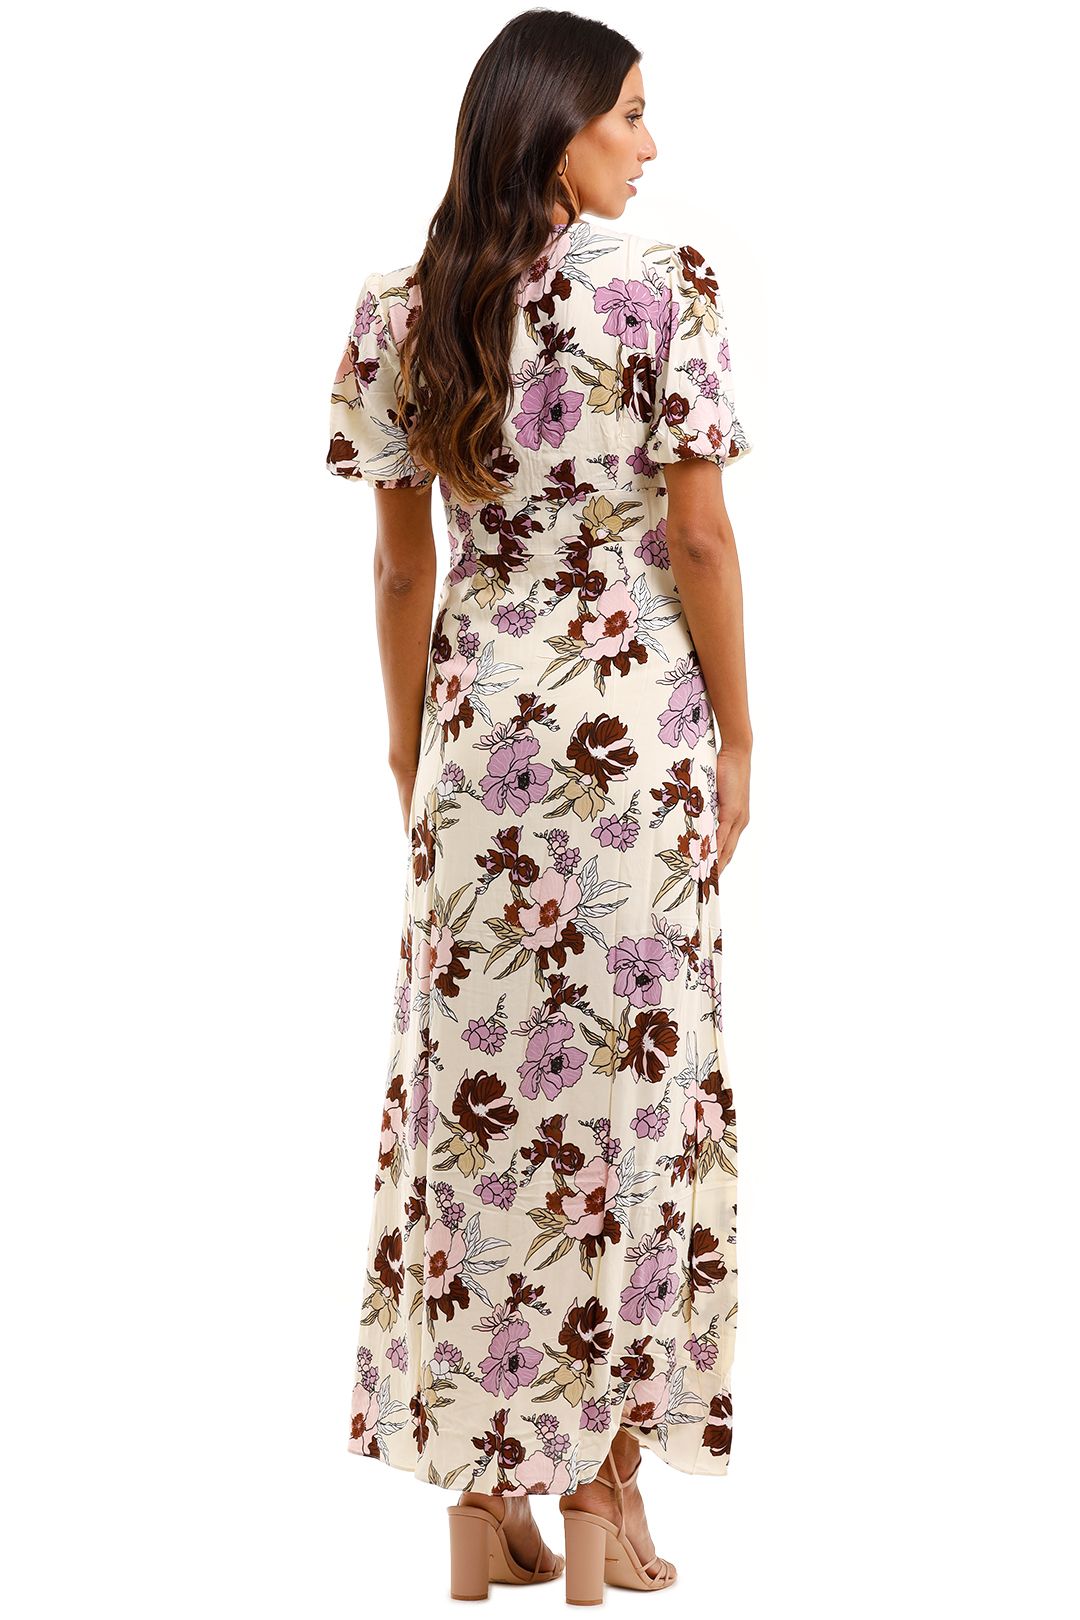 MLM Label Nile Maxi Dress Aster Floral Light V neckline